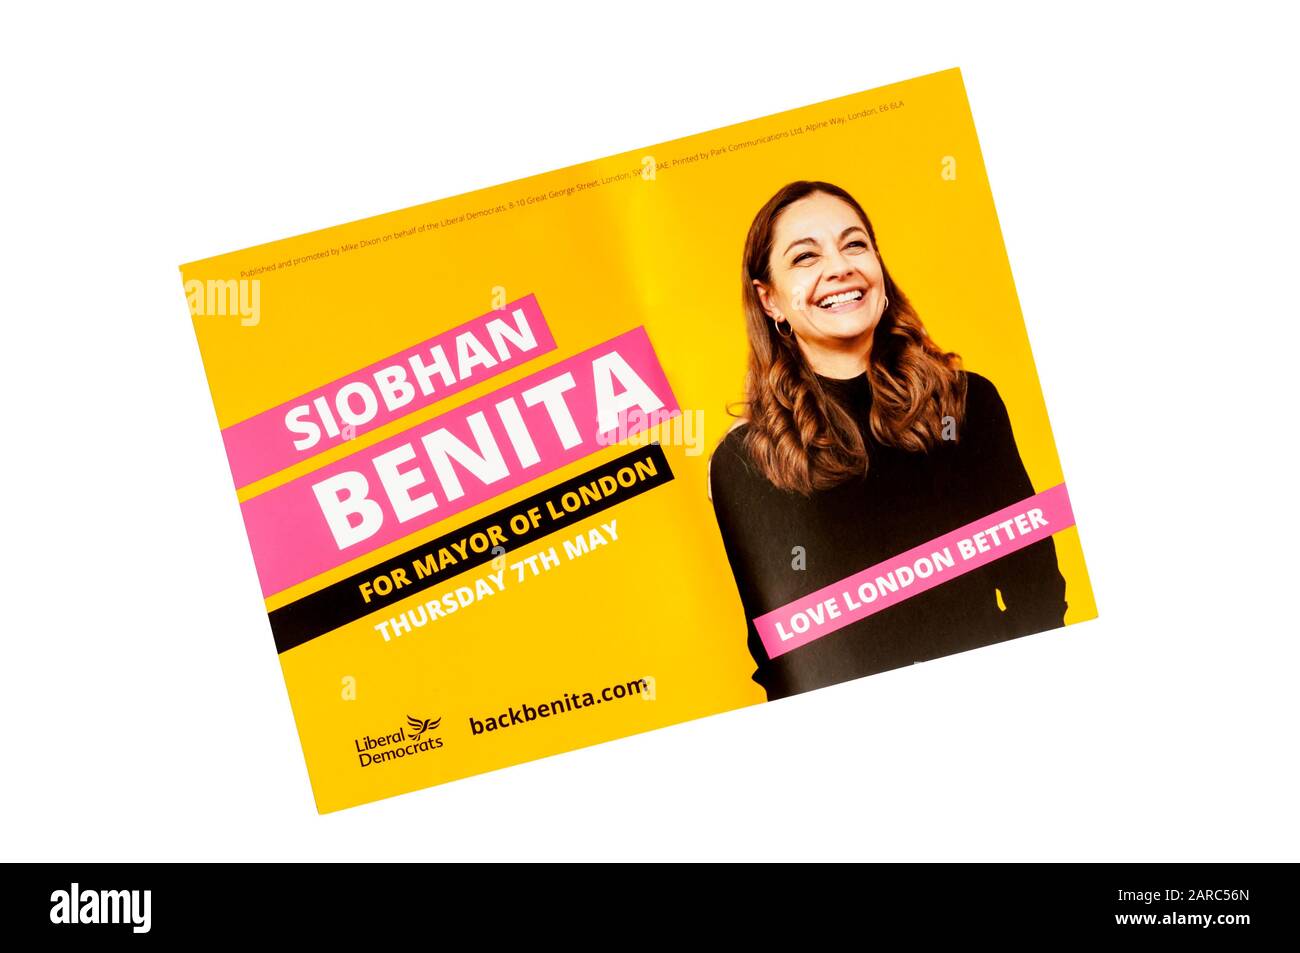 Un dépliant de campagne de Siobhan Benita, qui sera maire de Londres pour les libéraux-démocrates aux élections mayorales de Londres de 2020. Banque D'Images